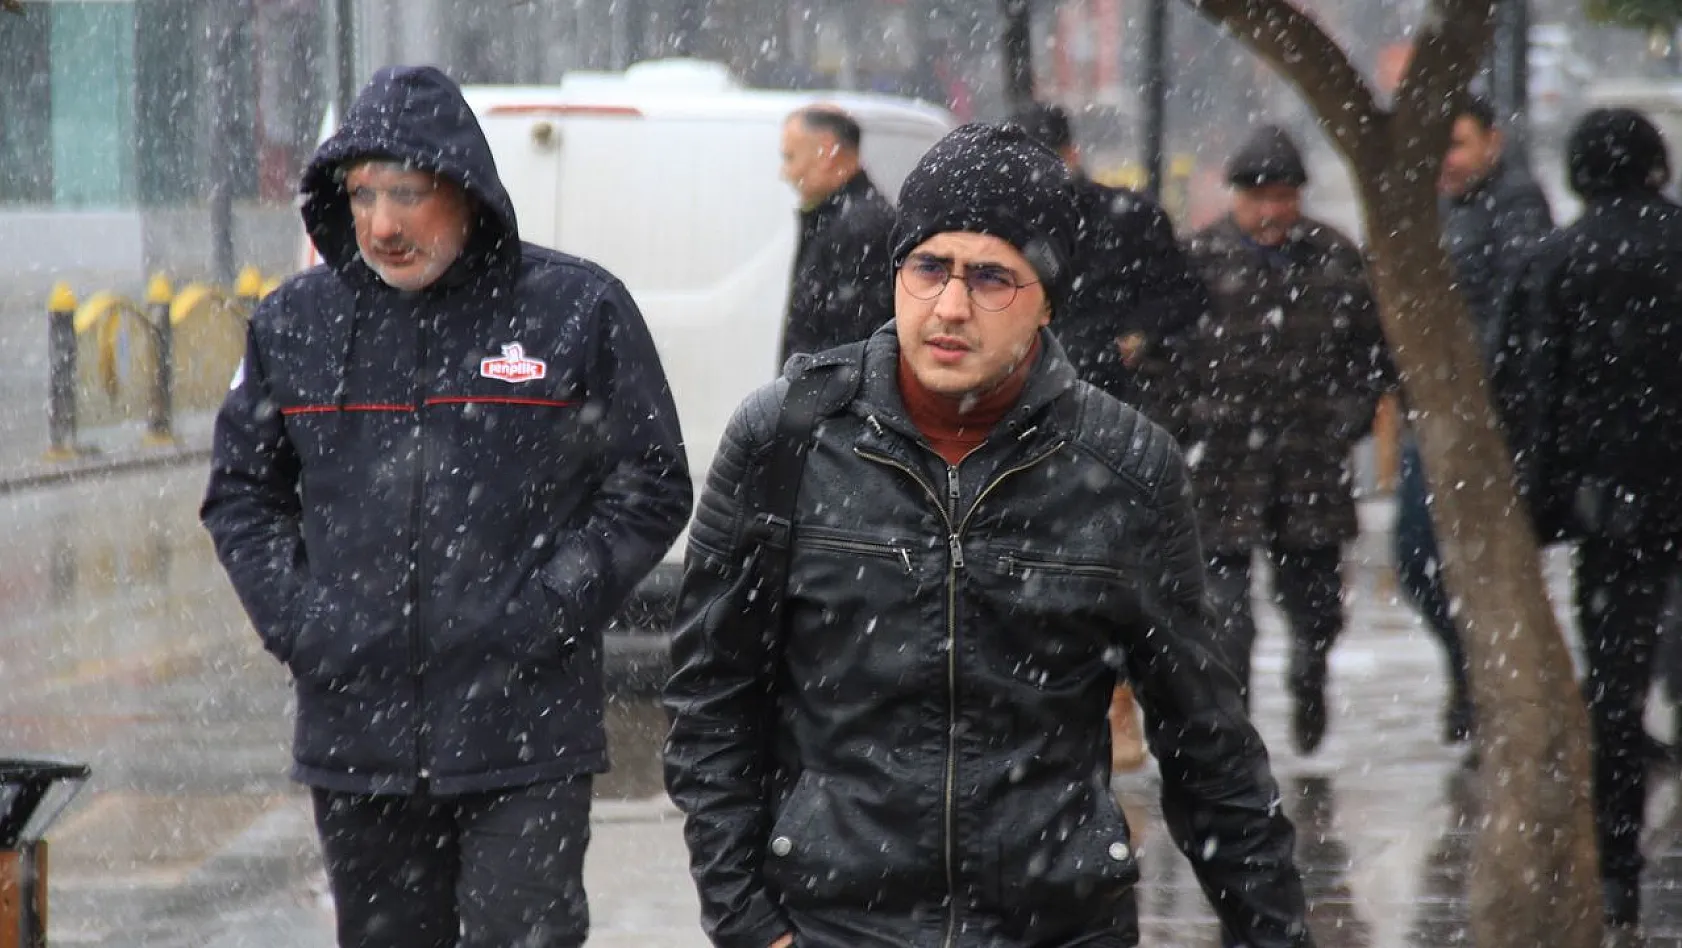 Elazığ'da uzun süredir beklenen kar yağışı başladı